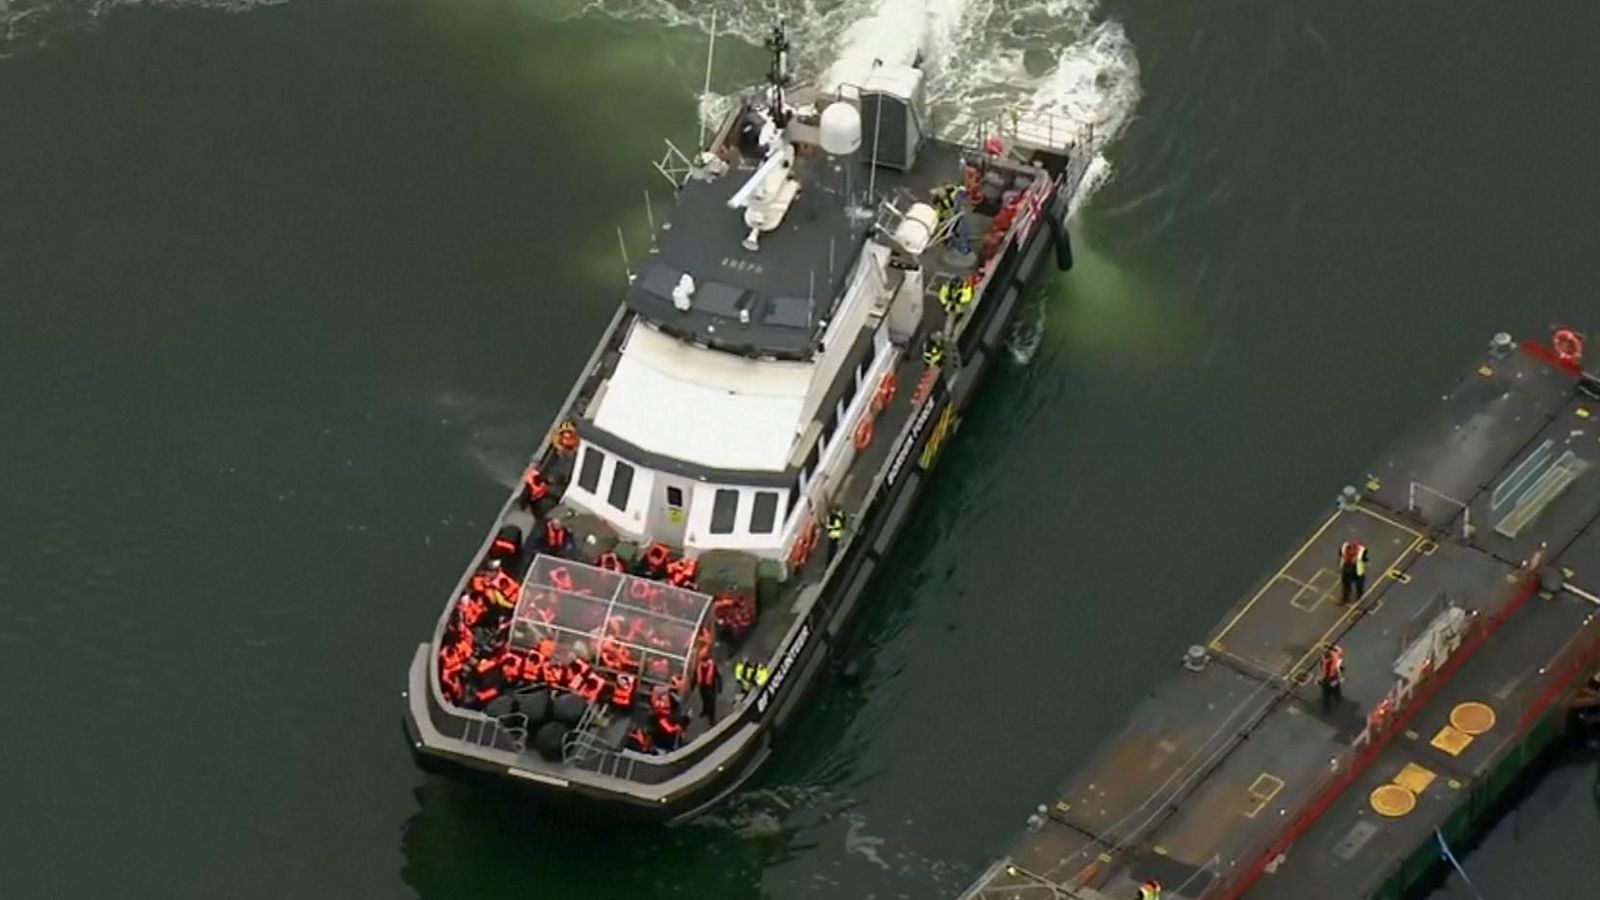 أحد قوارب الموت في عرض البحر حيث تم انقاذه من جانب البحرية البريطانية 